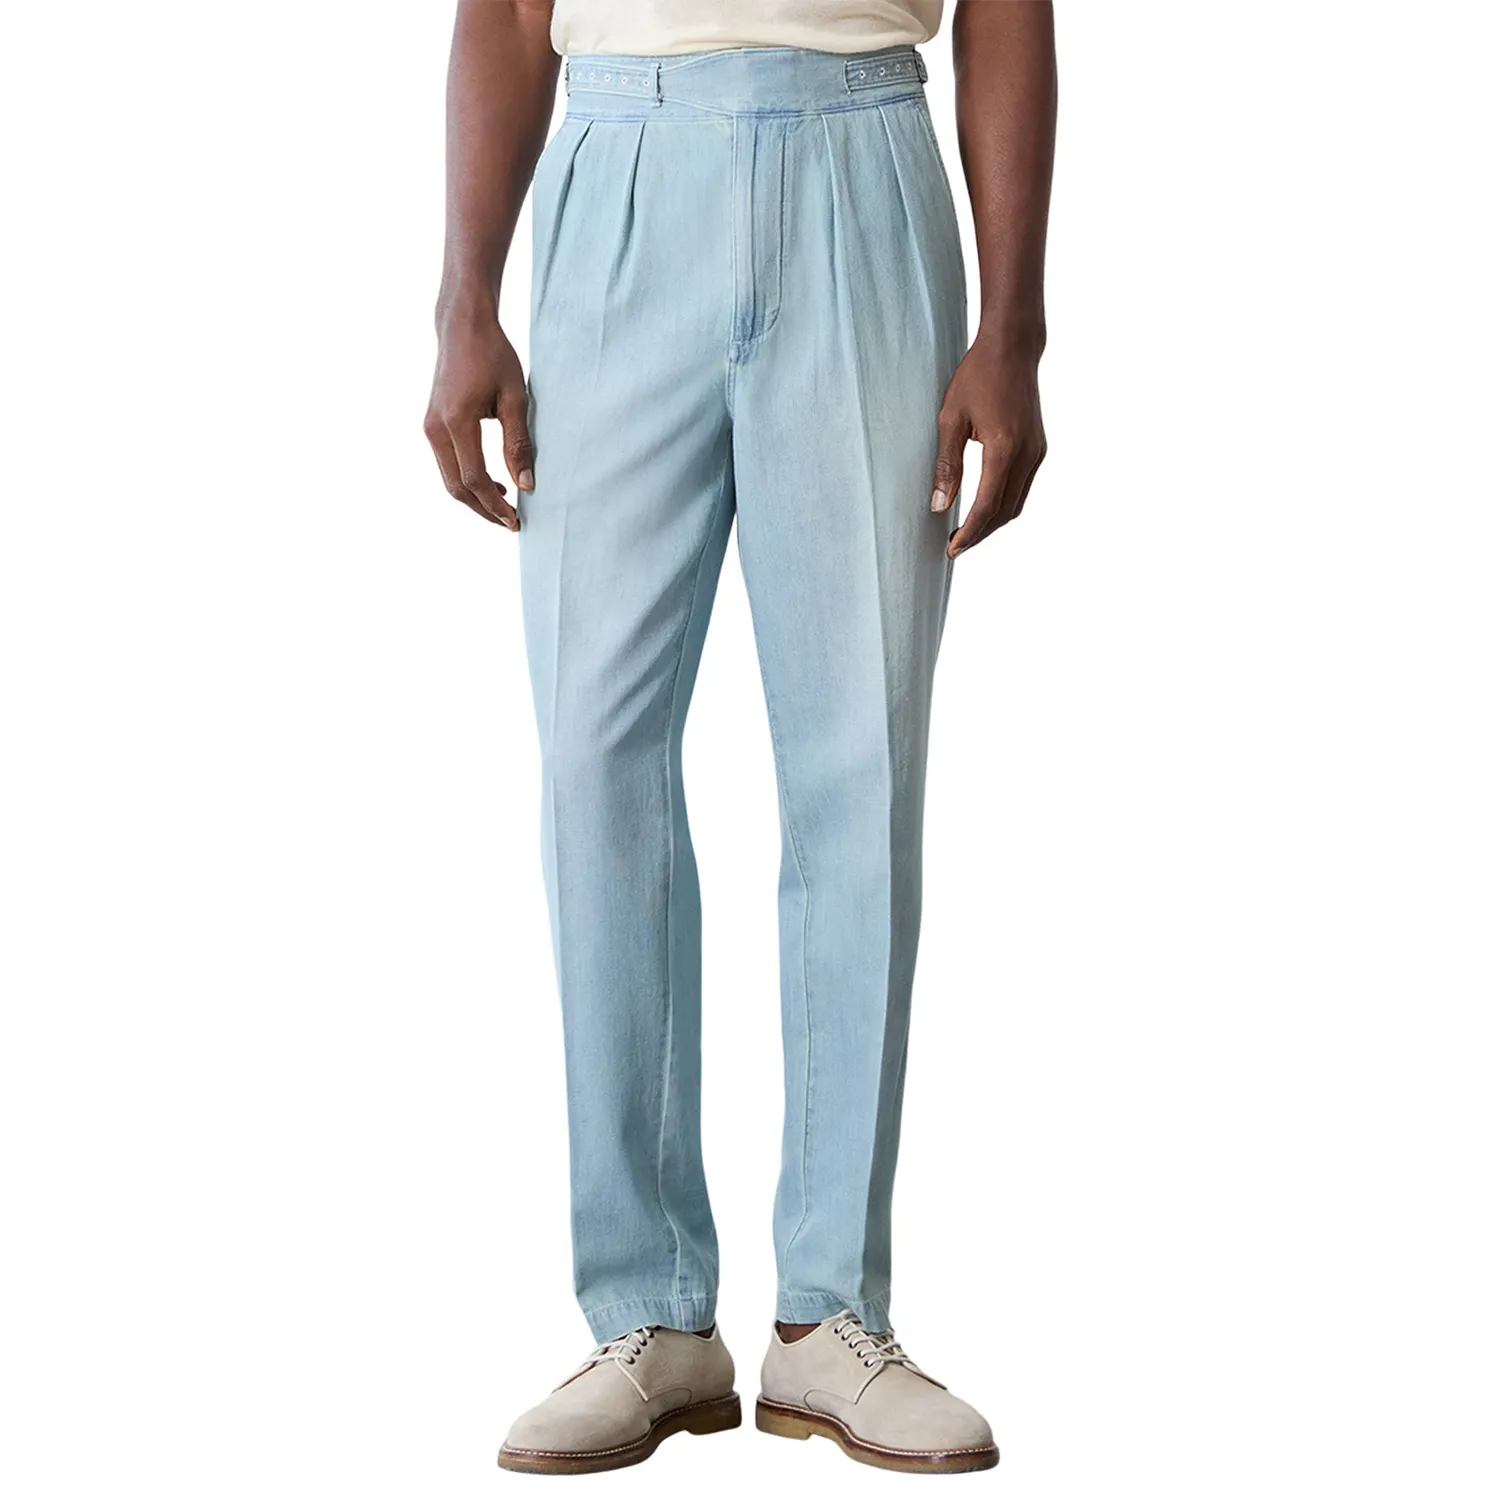 Personalizado al por mayor LOW MOQ Top Desgin Color sólido Formal Chino Lino Gurkha Pantalones